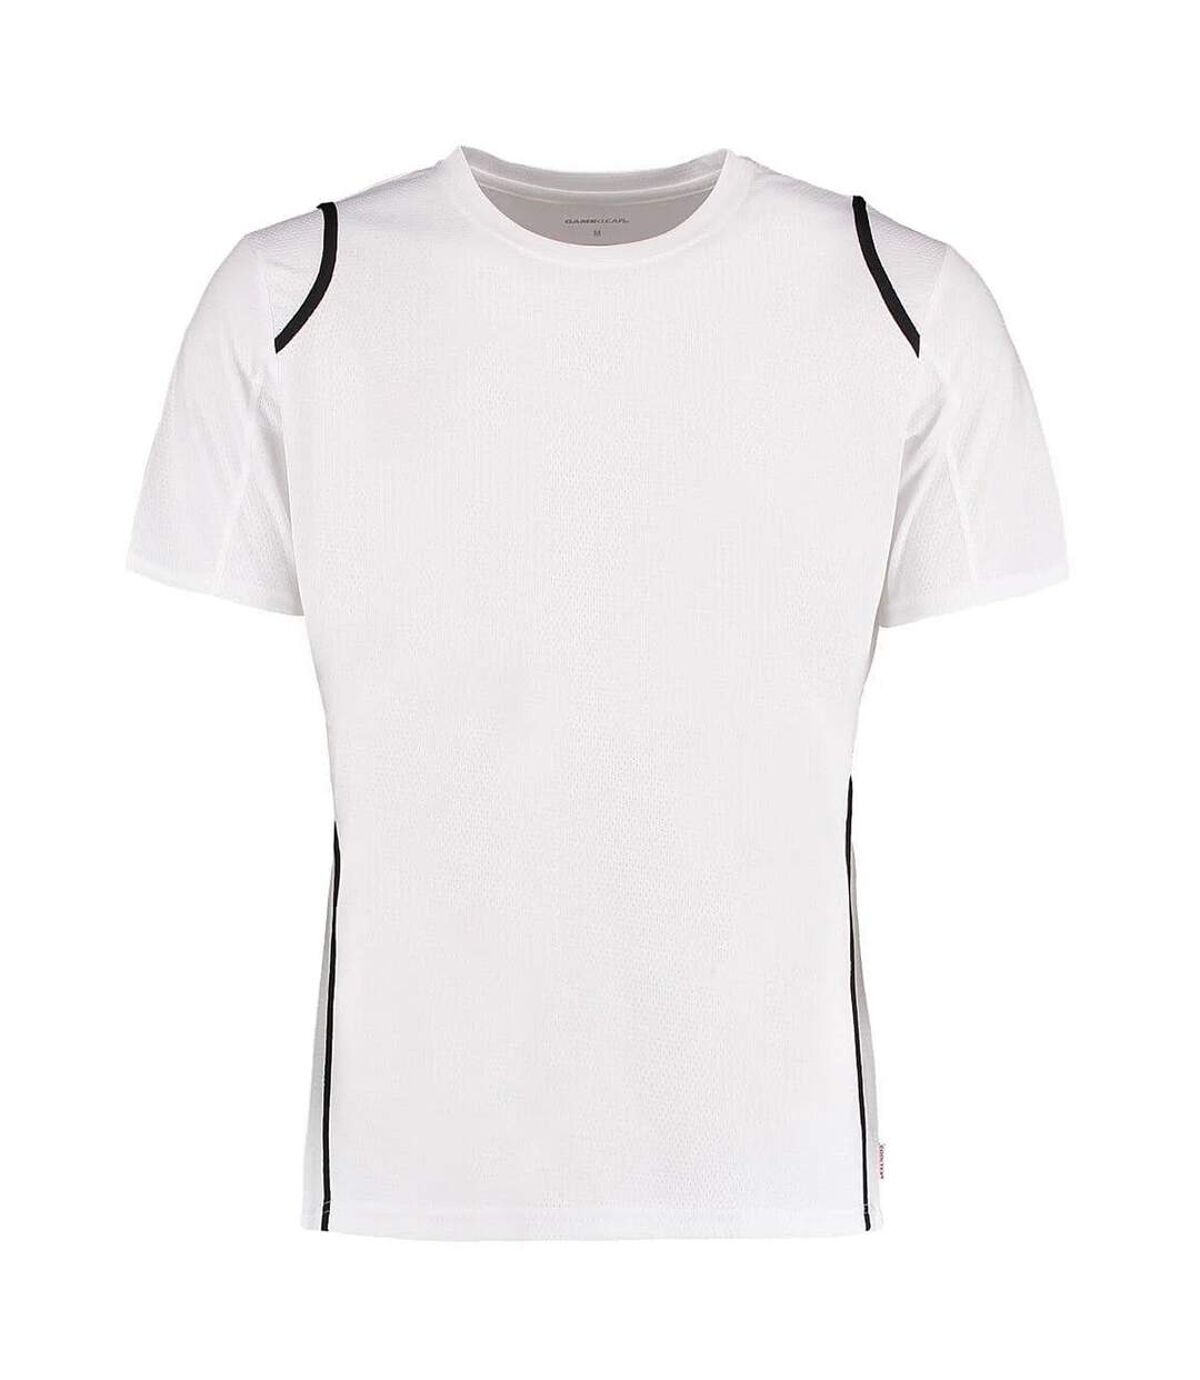 Gamegear Cooltex - T-shirt - Homme (Blanc/Noir) - UTBC451